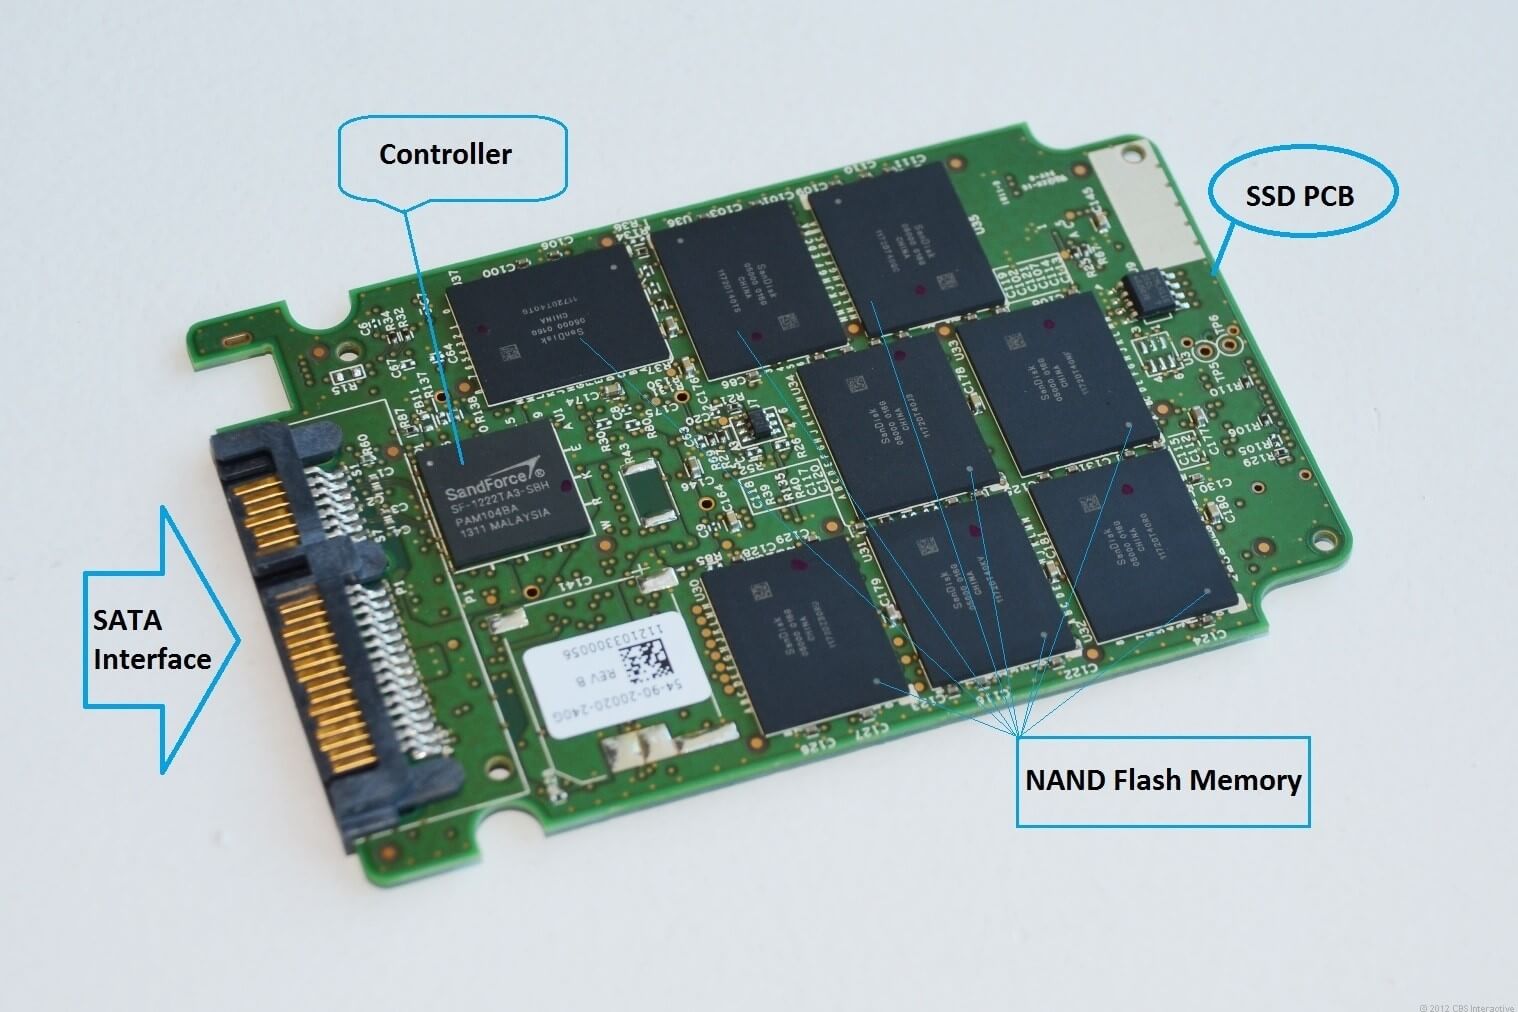 استفاده از تکنولوژی Nand سبب شده هارد SSD سرعت بالایی داشته باشد